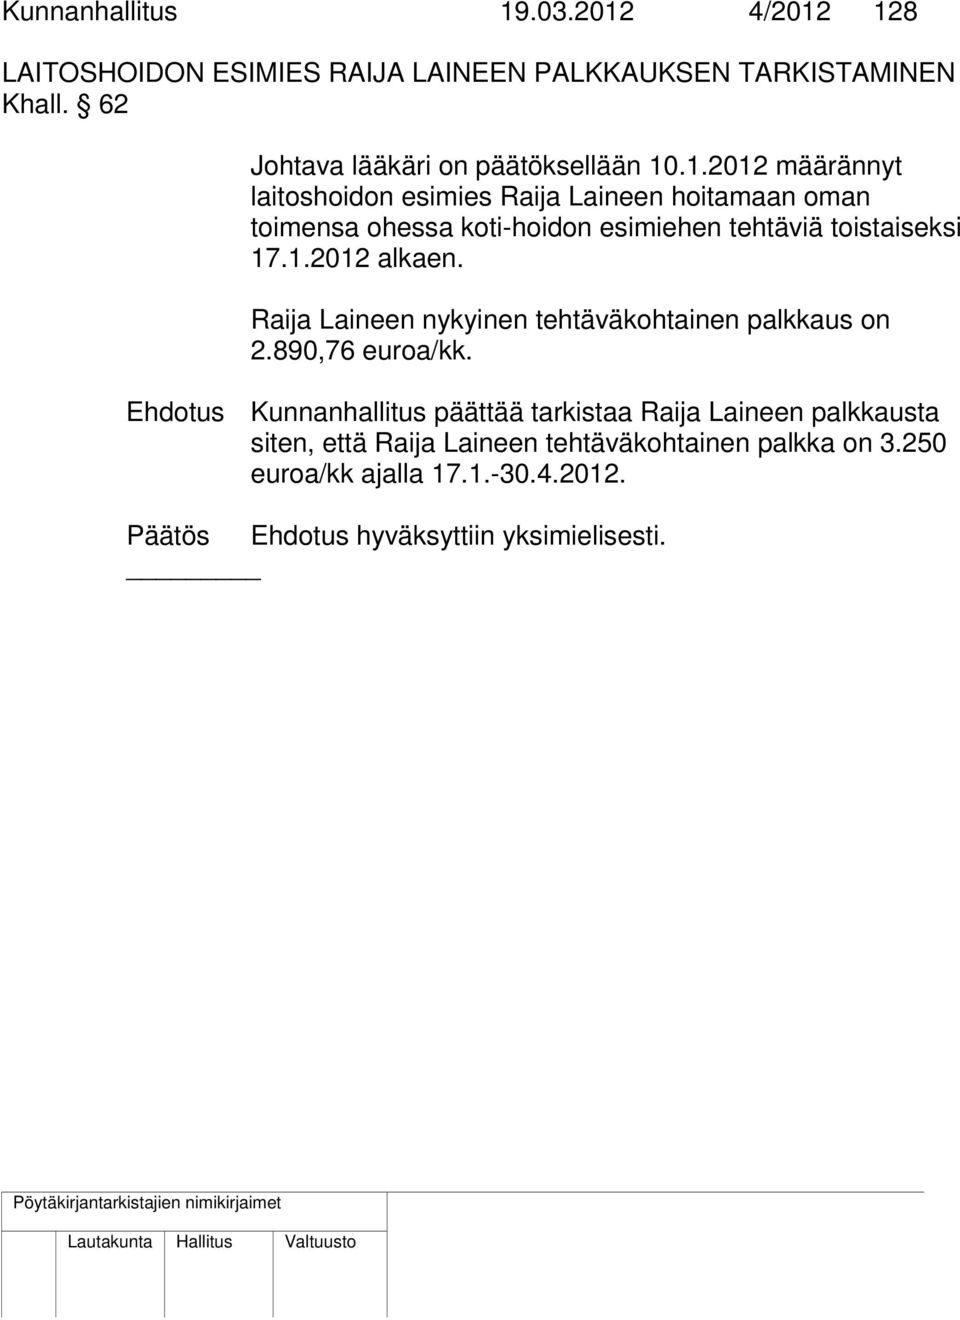 .1.2012 määrännyt laitoshoidon esimies Raija Laineen hoitamaan oman toimensa ohessa koti-hoidon esimiehen tehtäviä toistaiseksi 17.1.2012 alkaen.